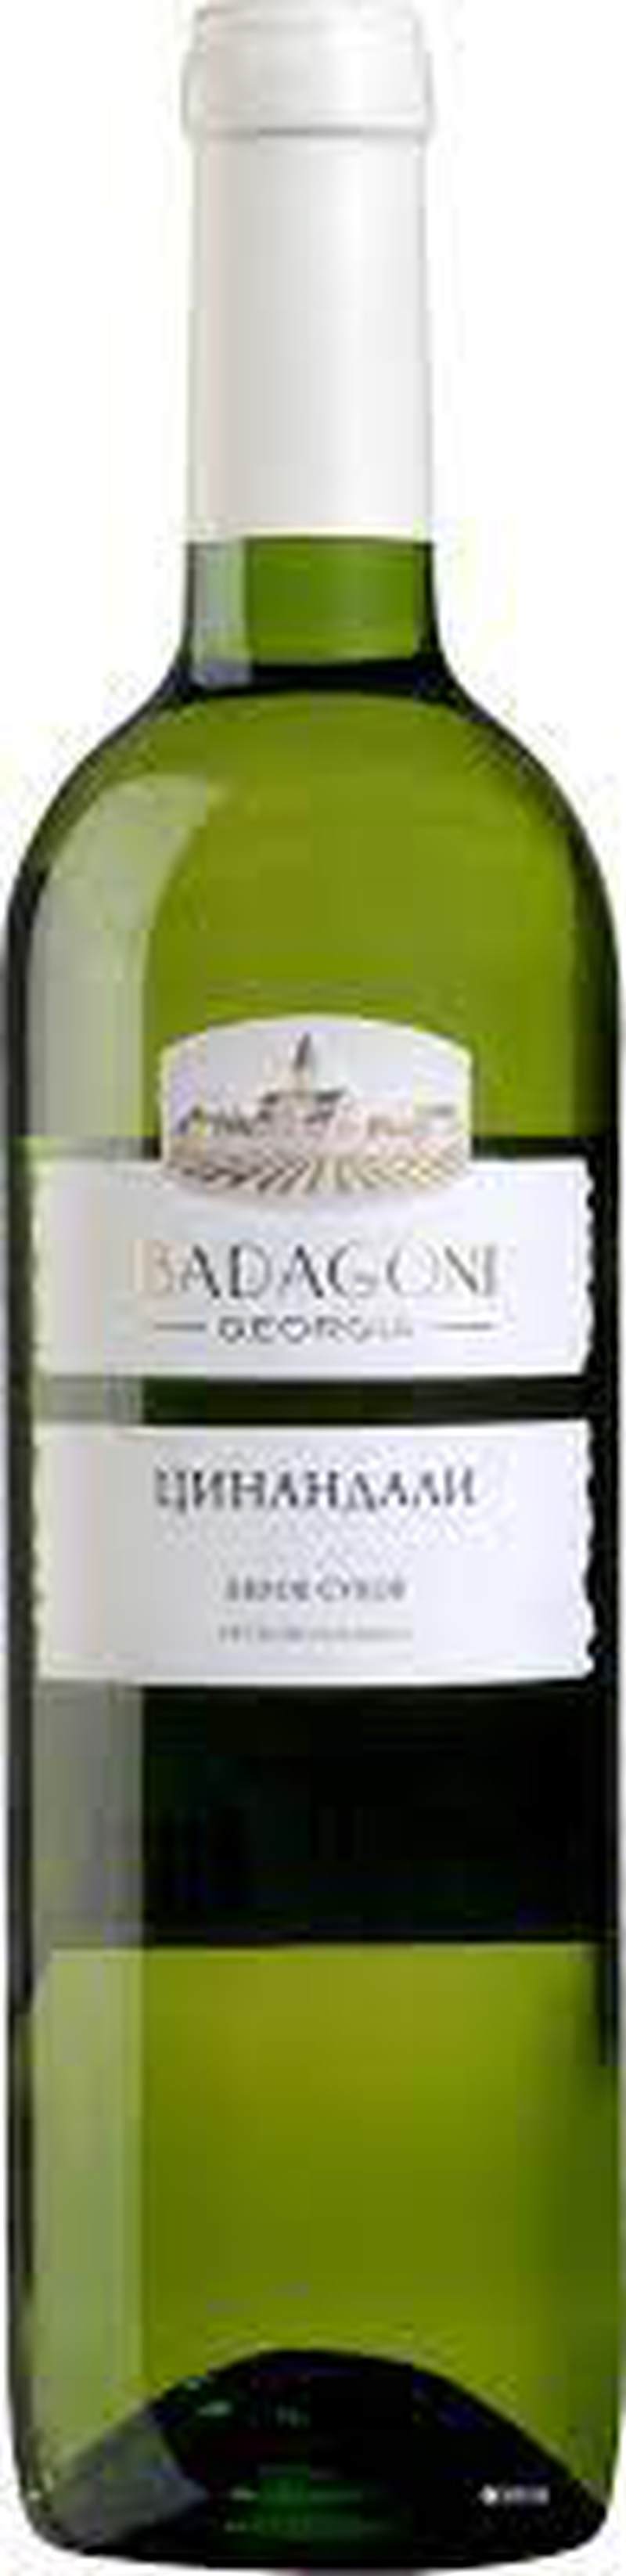 Вино Бадагоні Цинандалі біле/сухе 0,75л